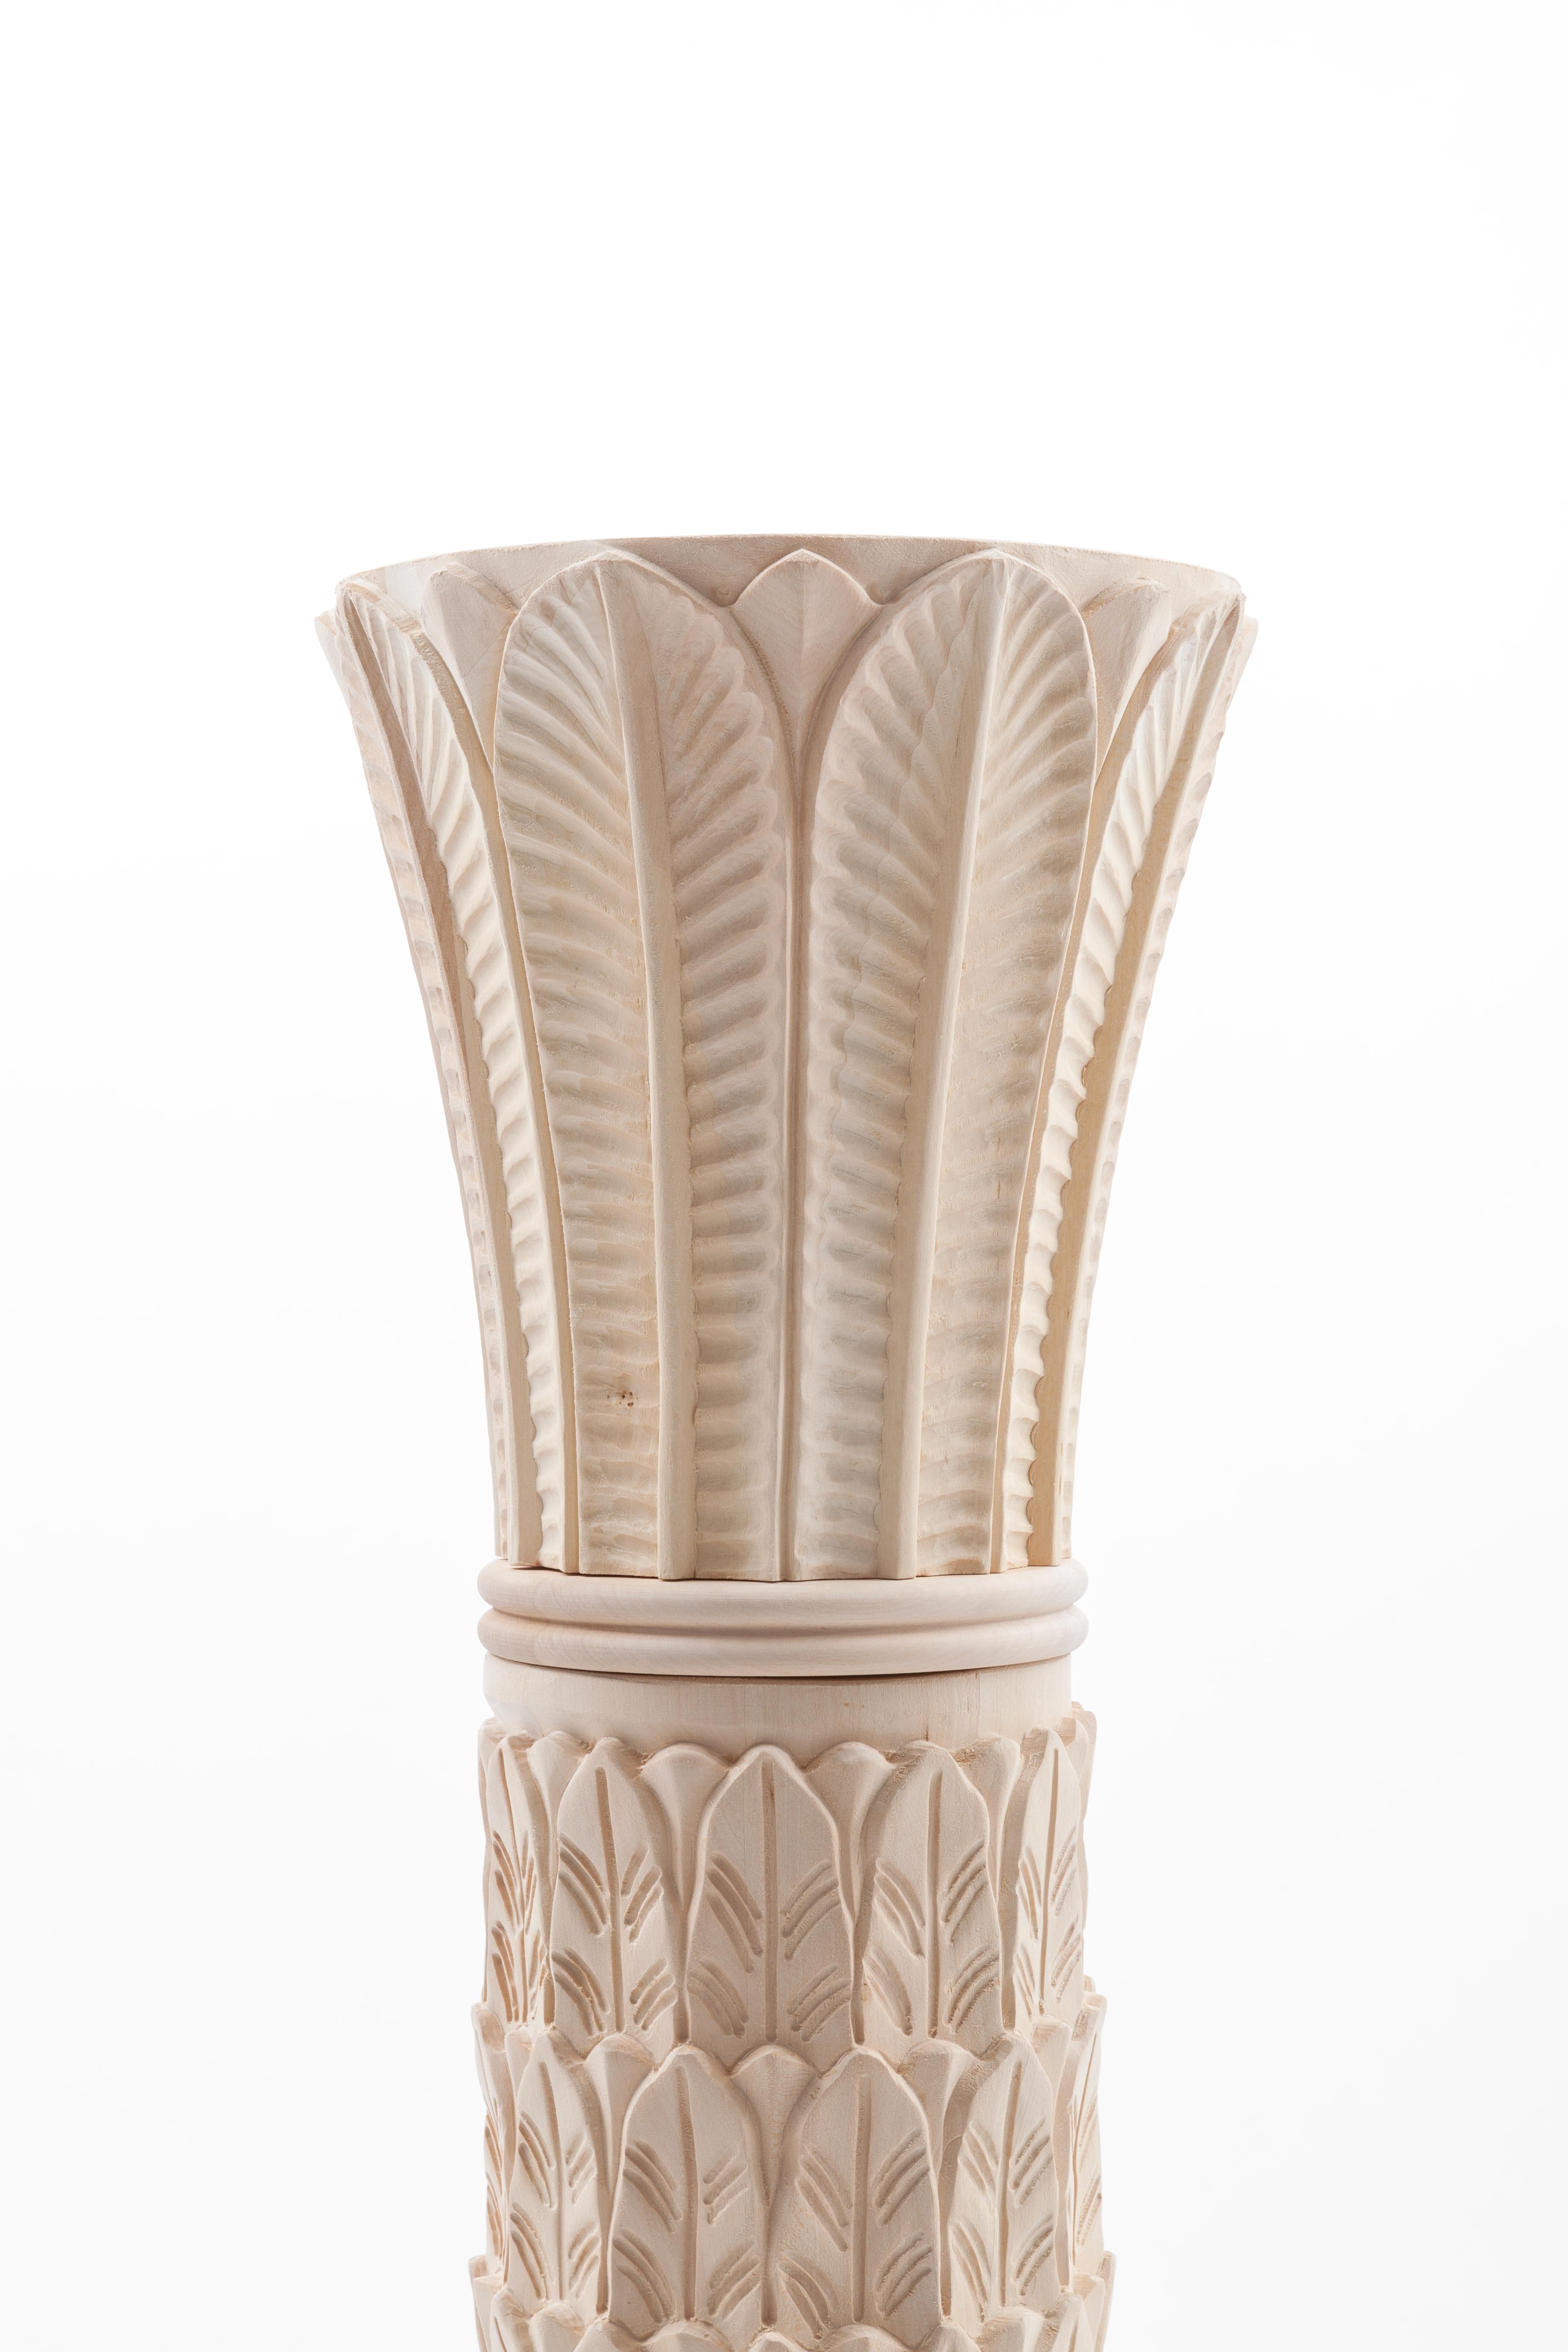 La colonne Anne est notre tentative de réunir le travail moderne et l'artisanat traditionnel.
Il est fabriqué en Italie en bois de tilleul naturel et entièrement fini à la main, ce qui fait qu'il n'y a pas deux pièces identiques. 
Nous nous